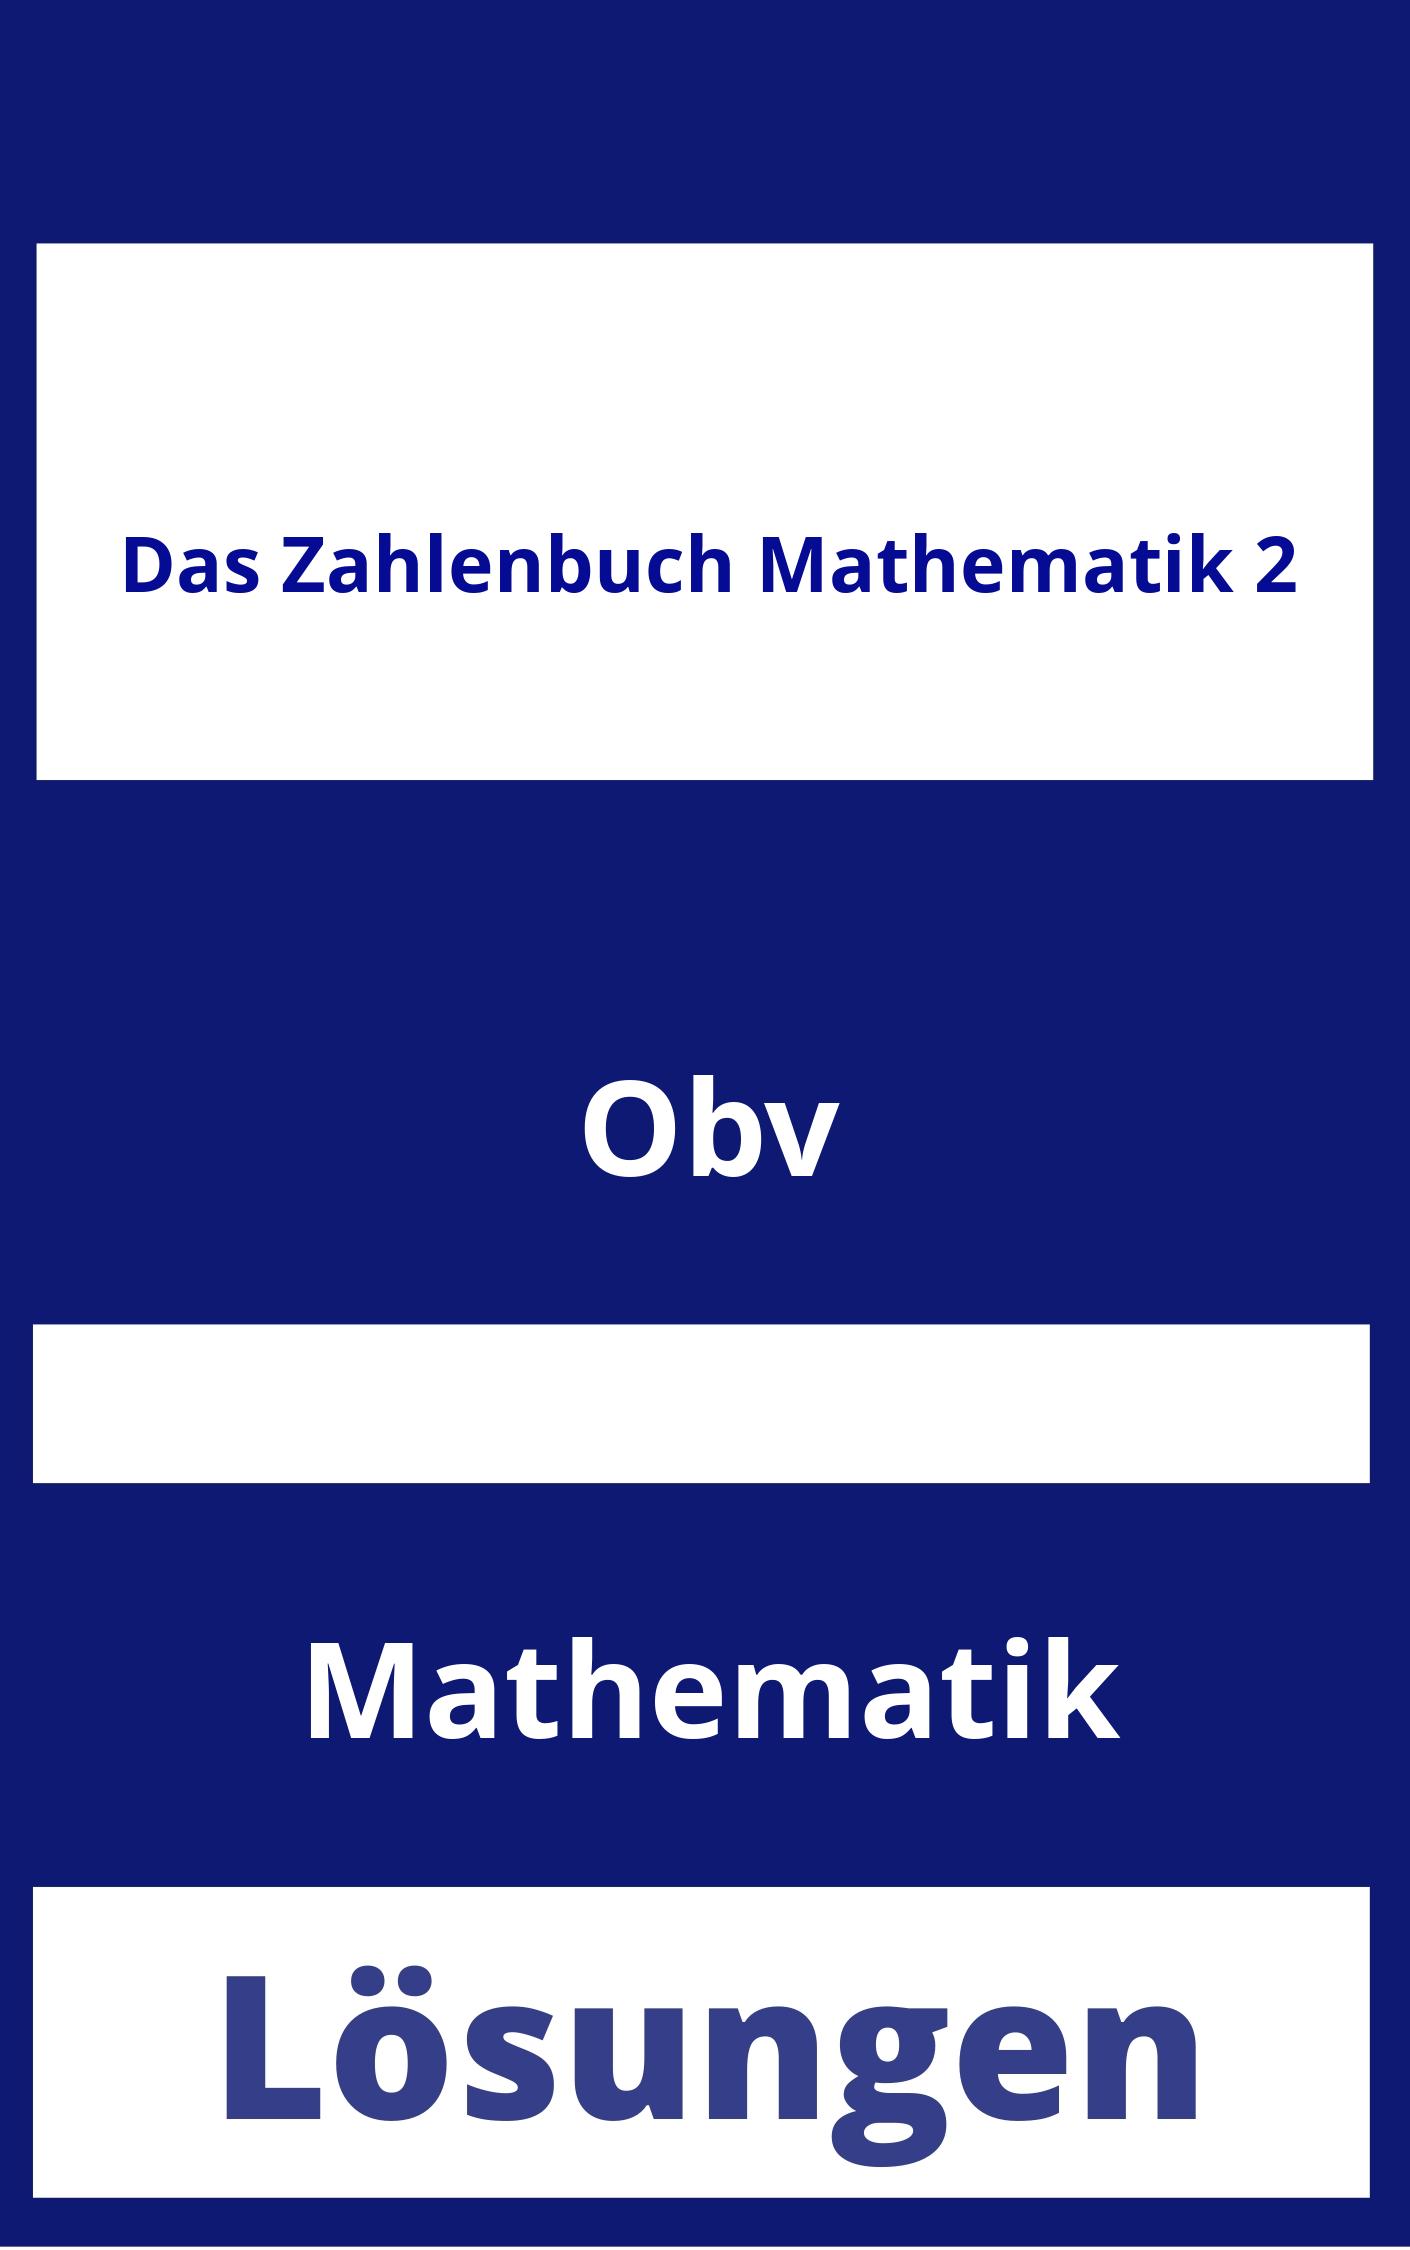 Das Zahlenbuch Mathematik 2 Lösungen PDF